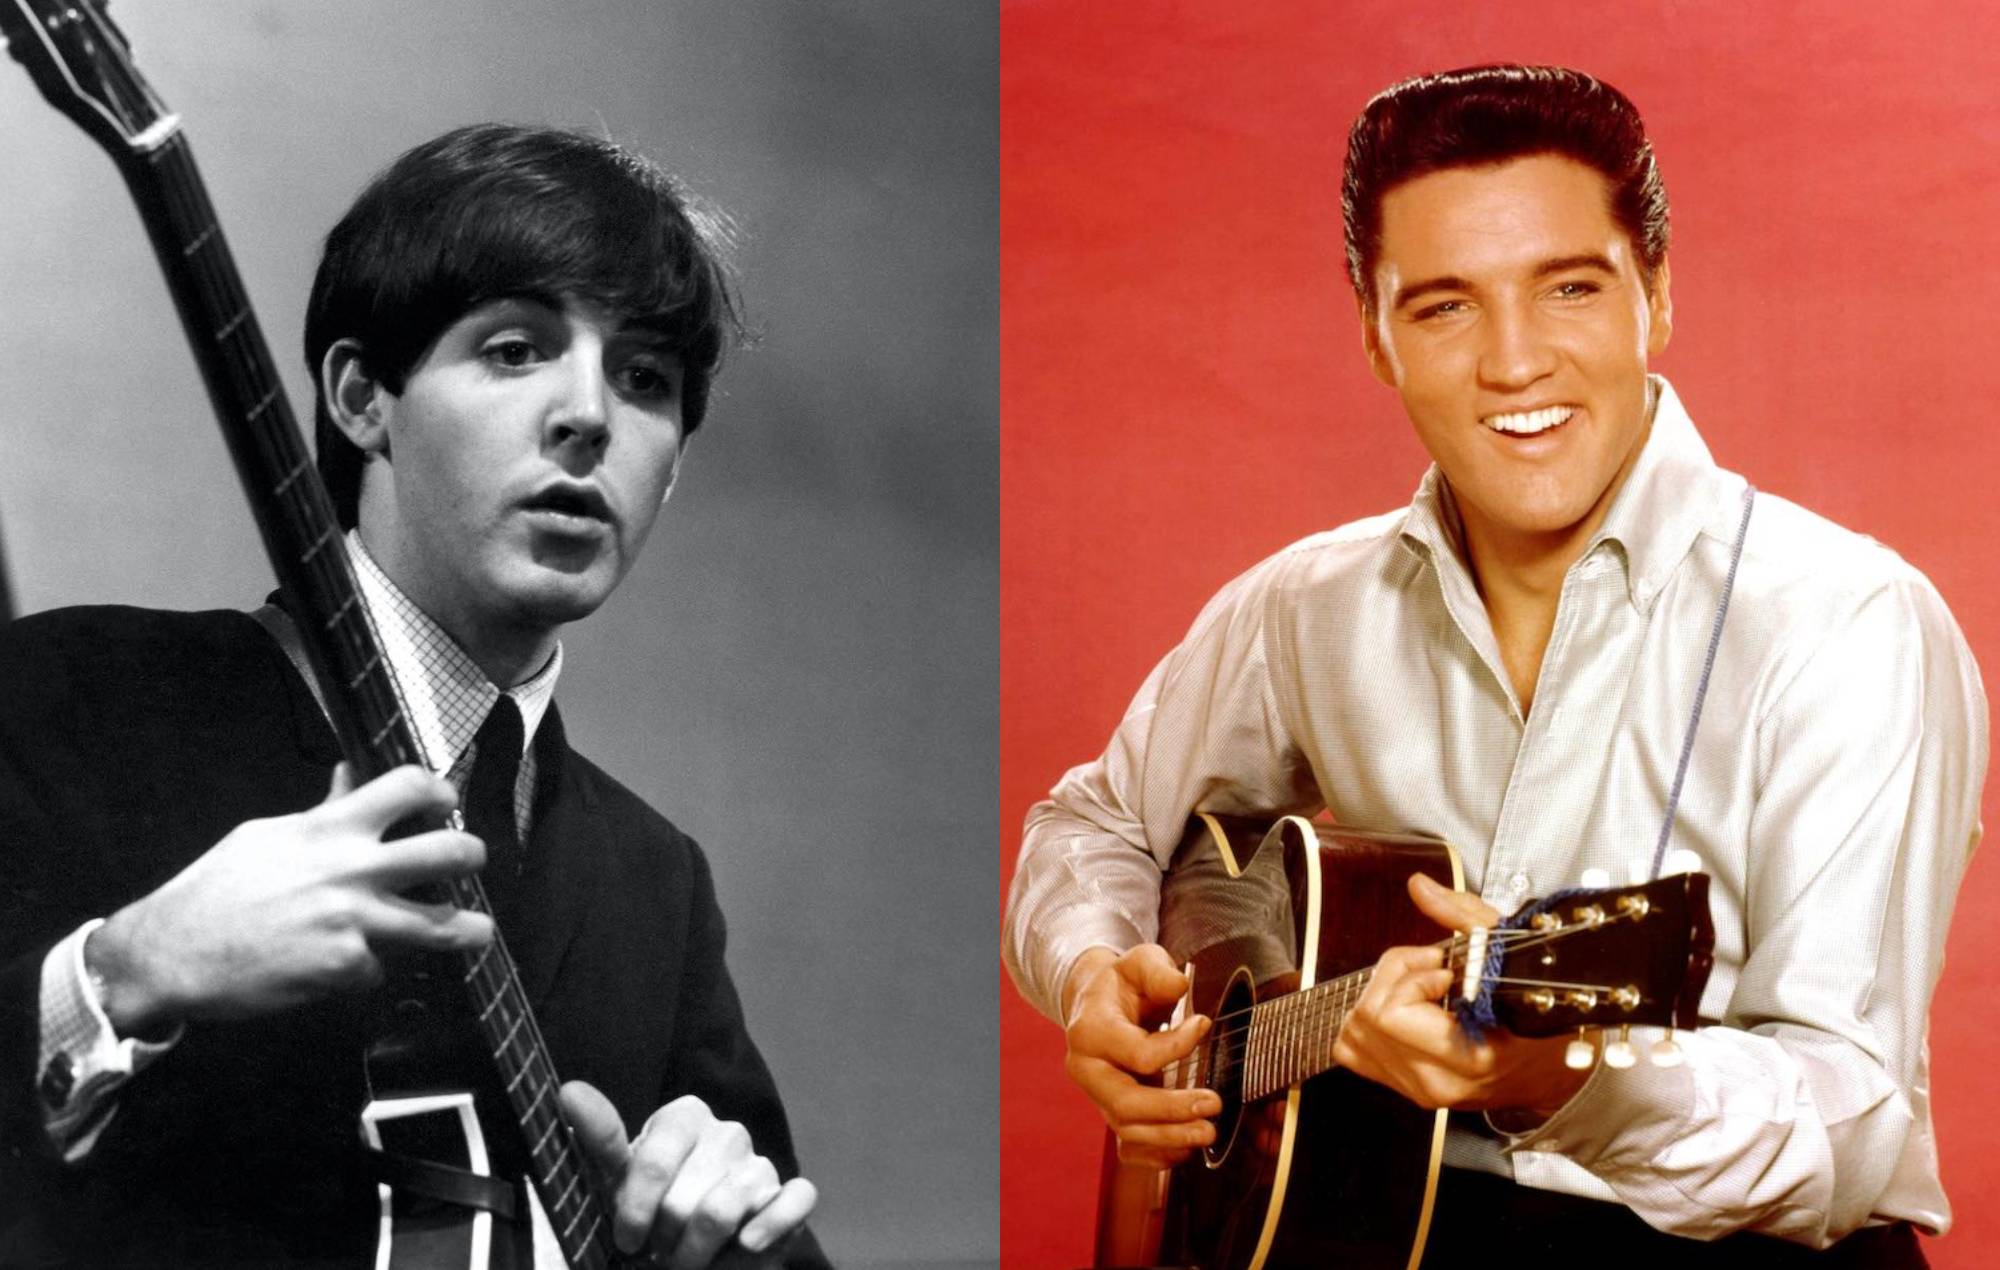 Paul McCartney recuerda haber conocido a Elvis Presley: "Era muy guay"